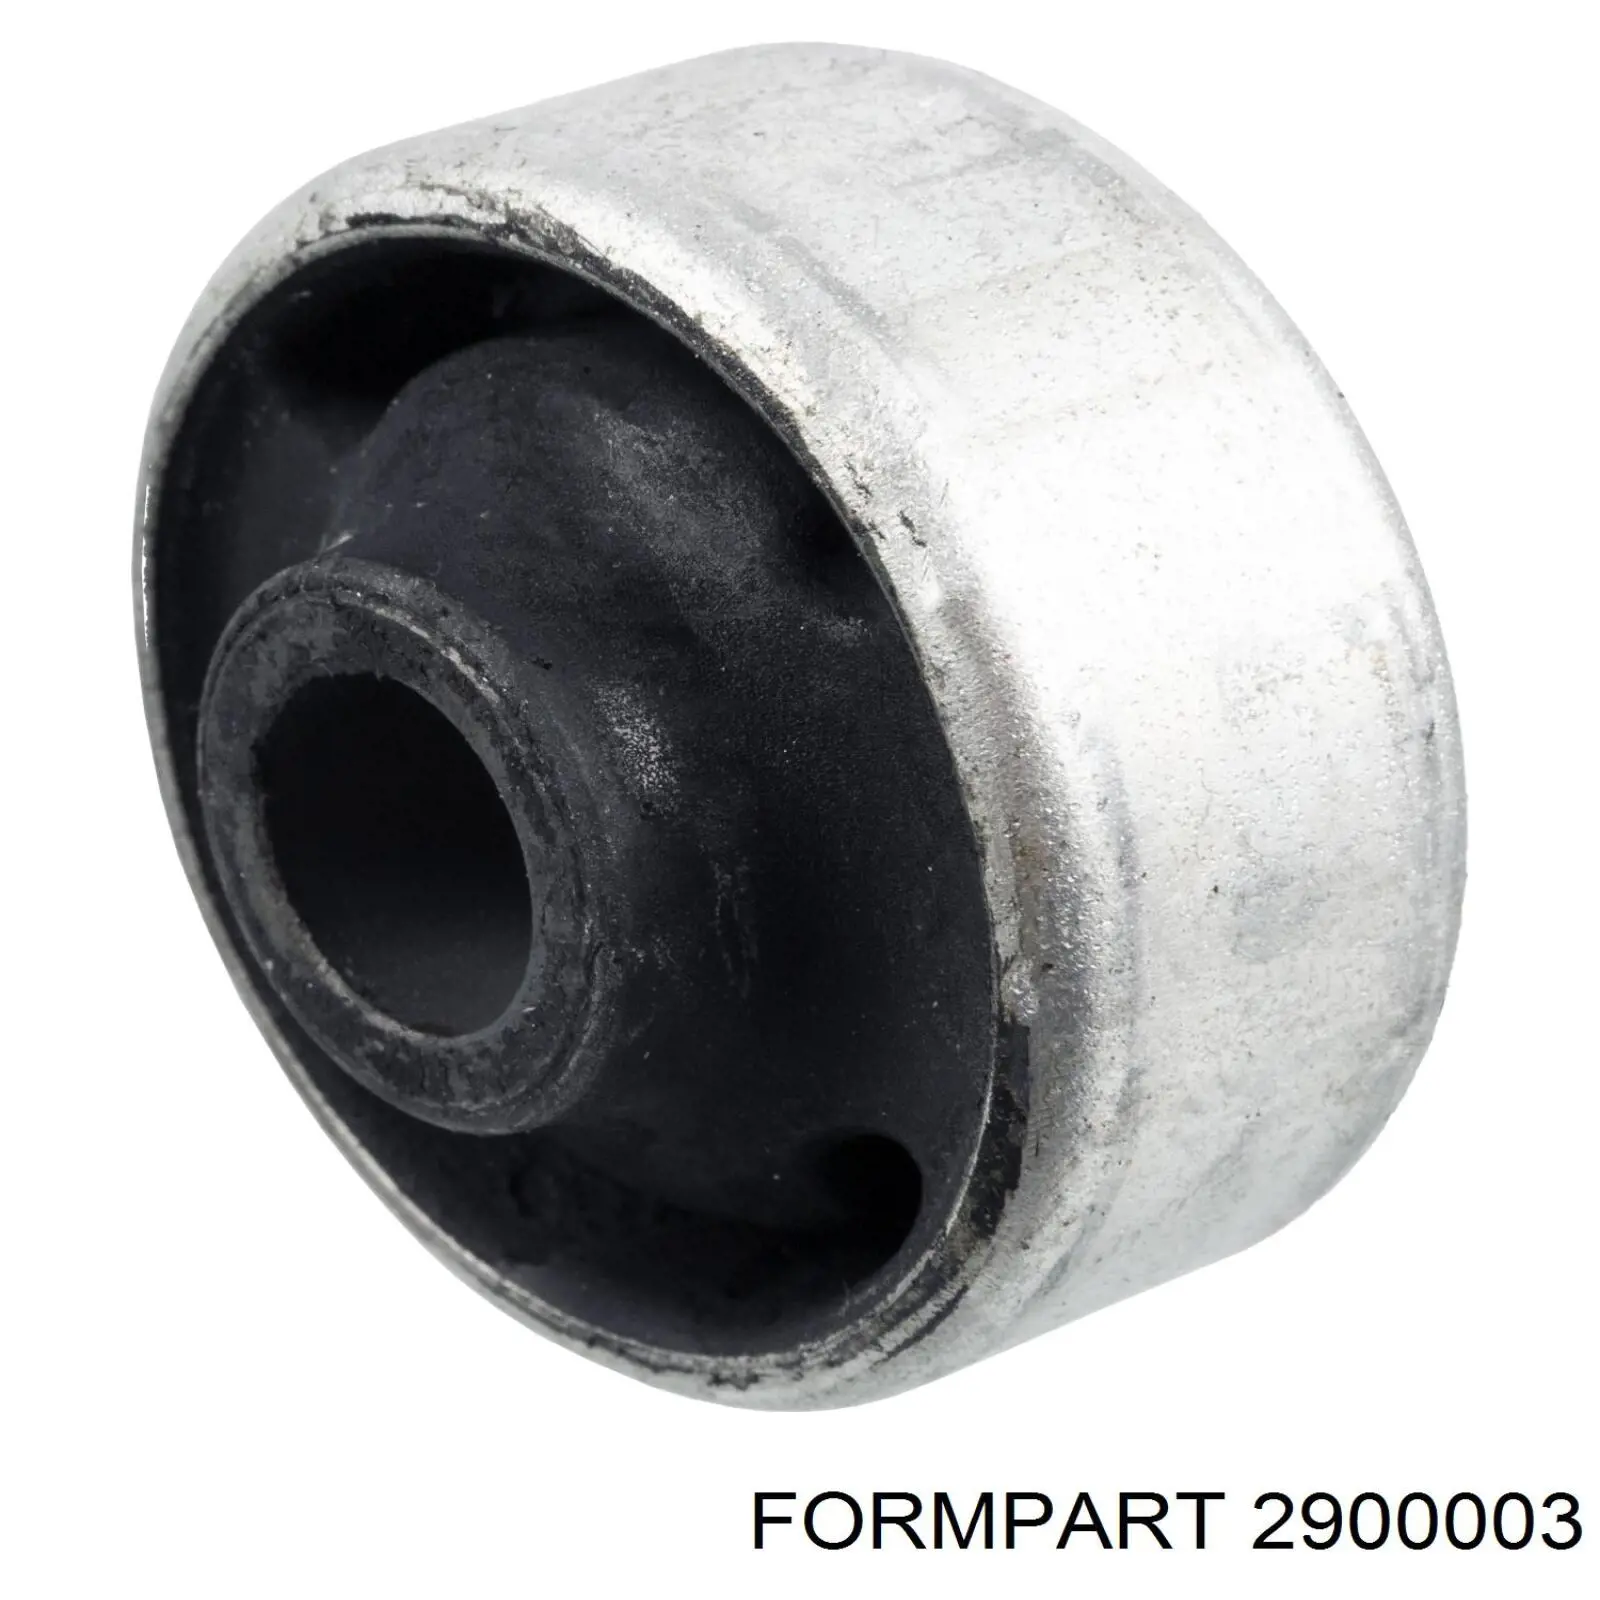 2900003 Formpart/Otoform silentblock de suspensión delantero inferior